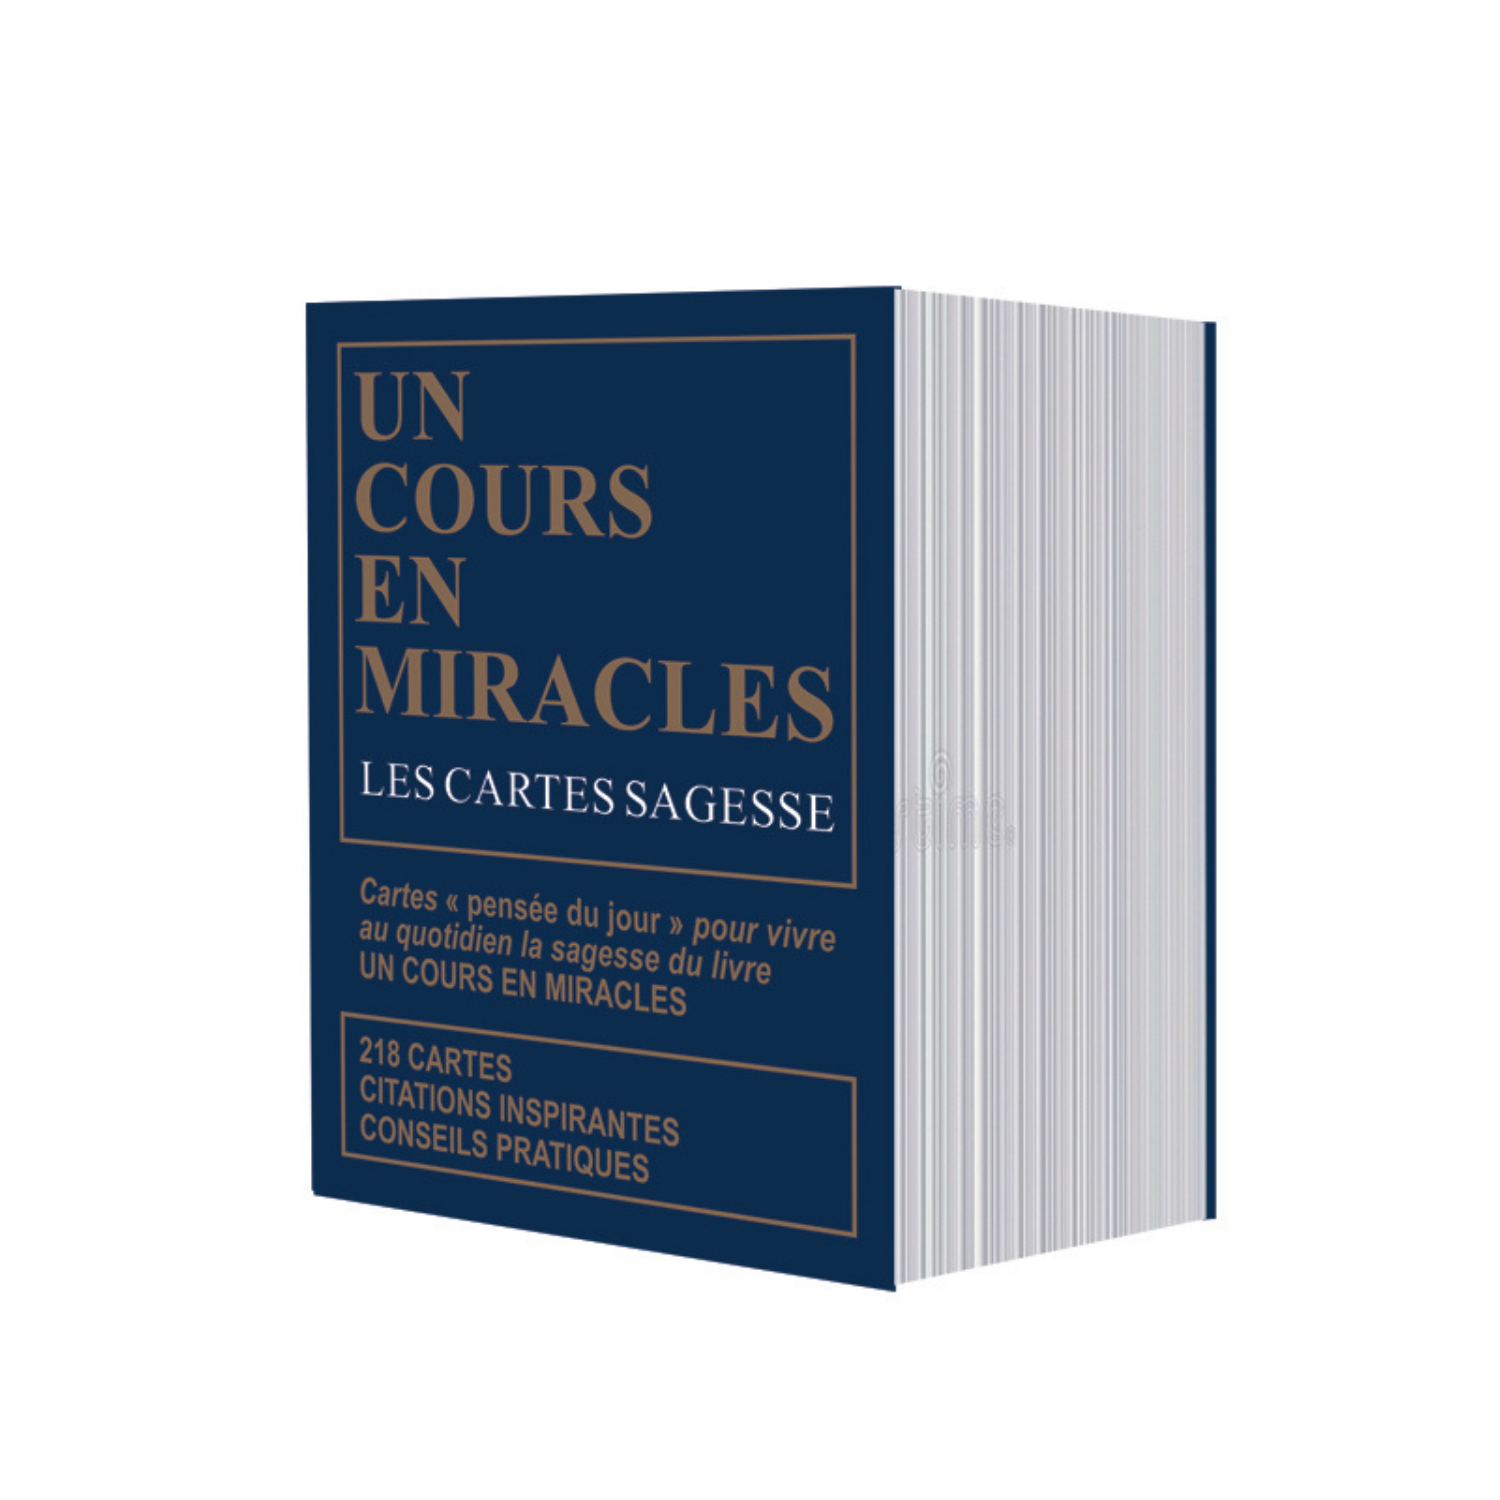 Un cours en miracles les cartes sagesse